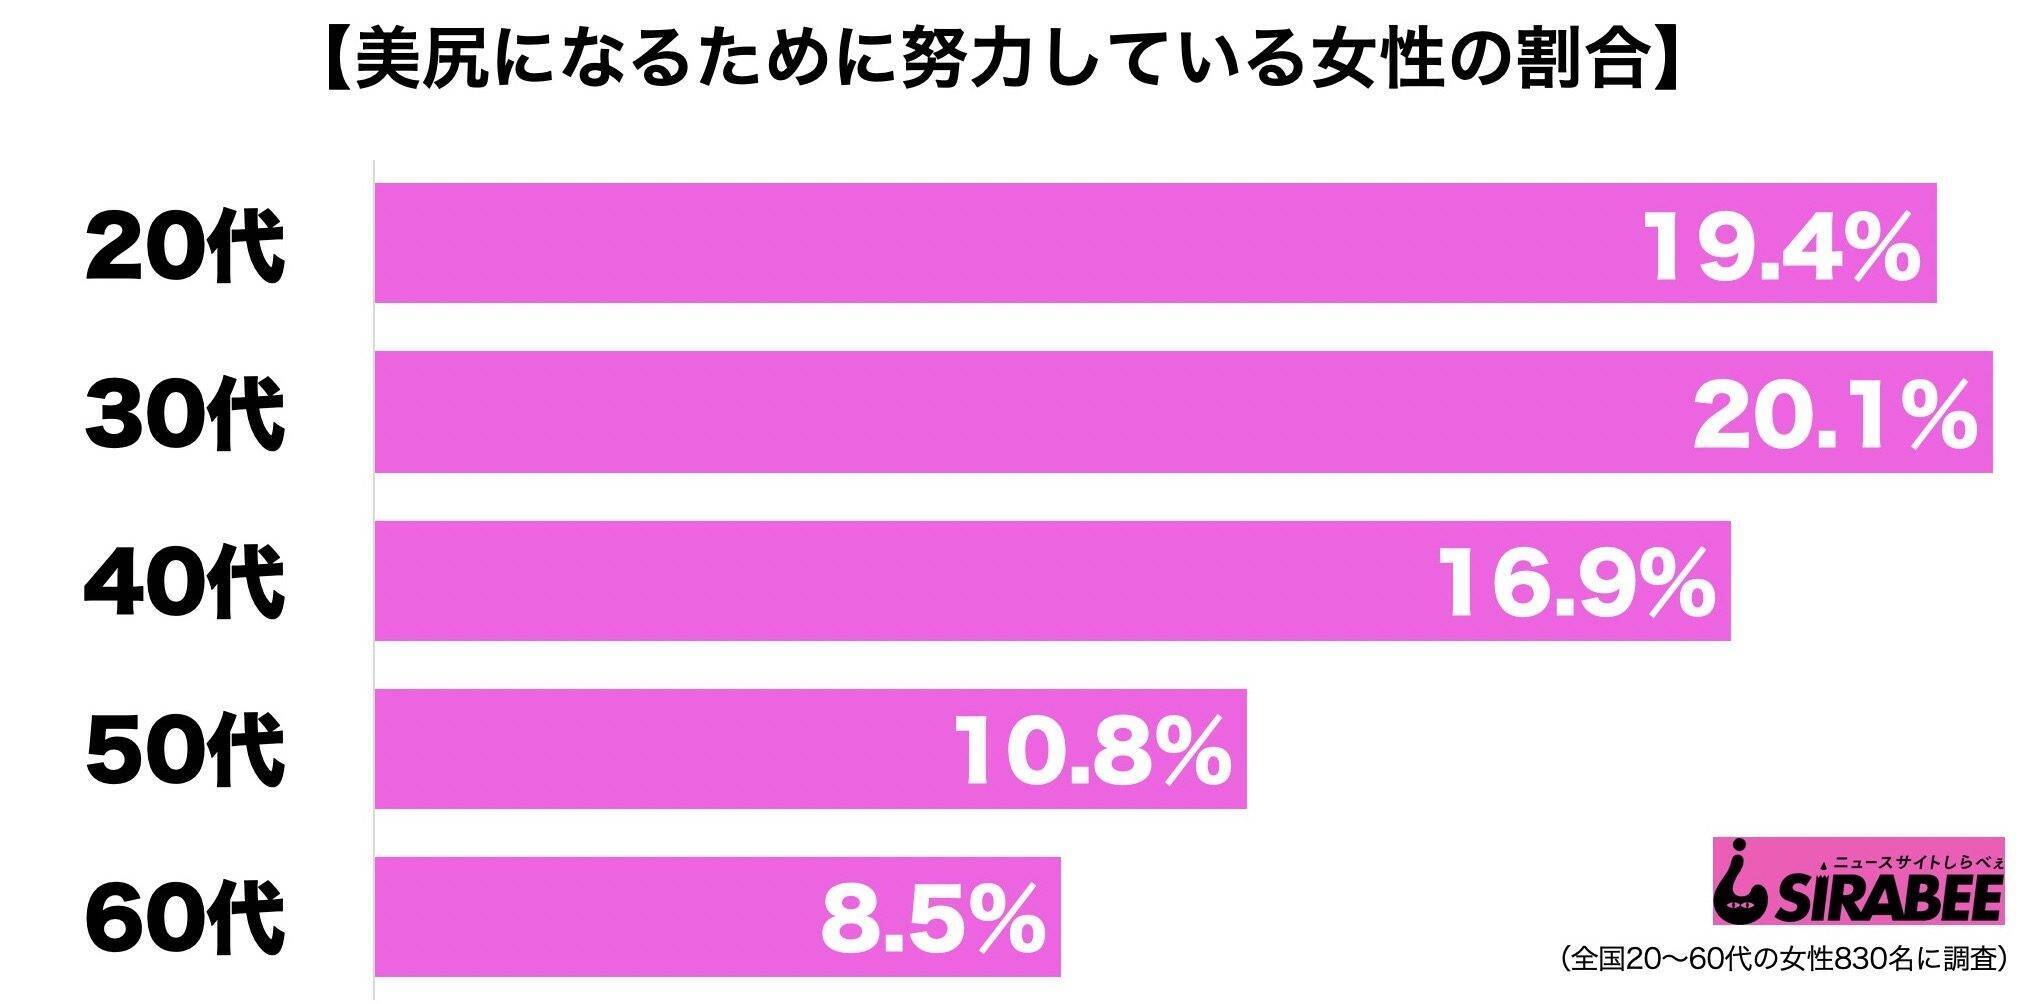 内田理央、ピンクの下着で美ボディ披露 木村カエラも興奮気味？ (2019年12月26日) エキサイトニュース